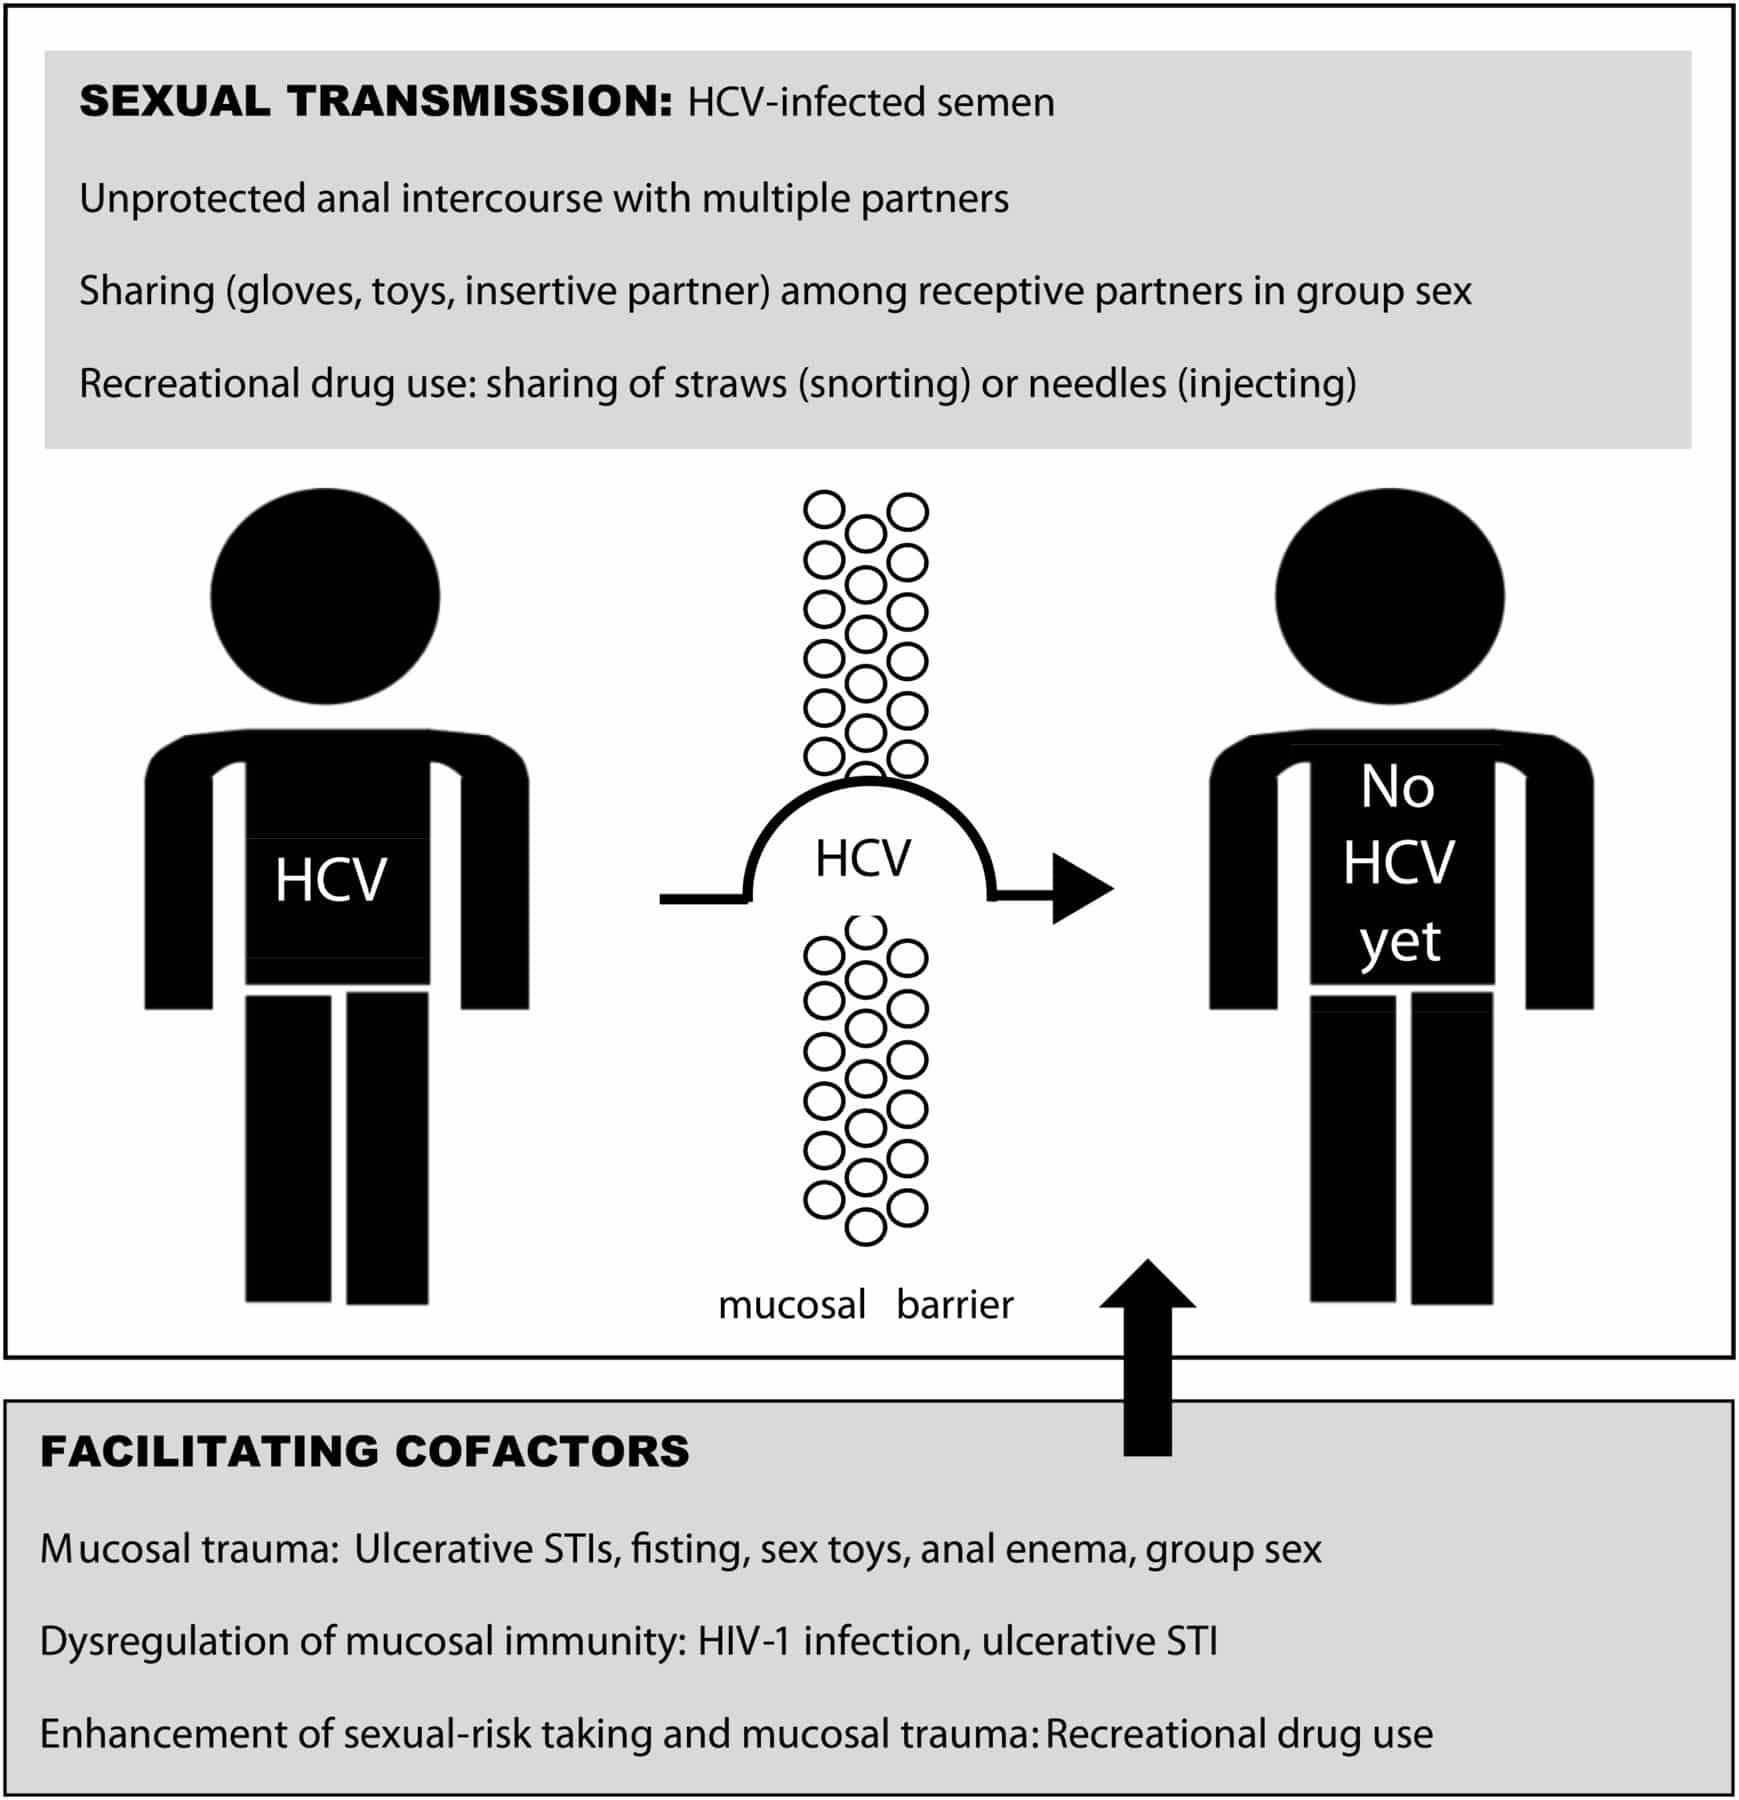 Emerging viral STIs among HIV